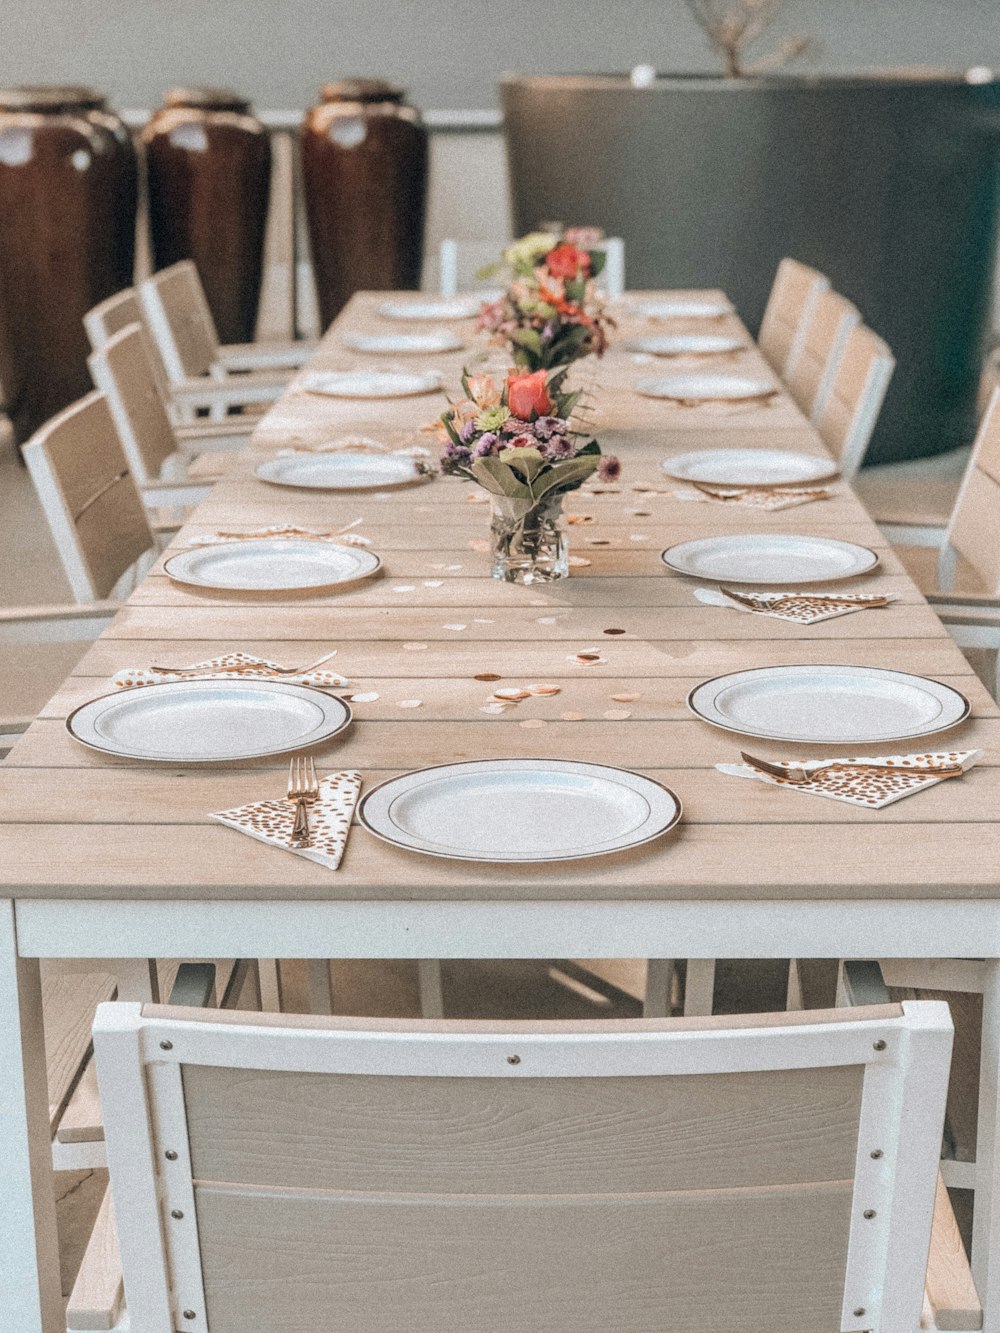 의자가 있는 식탁에 흰색 세라믹 접시